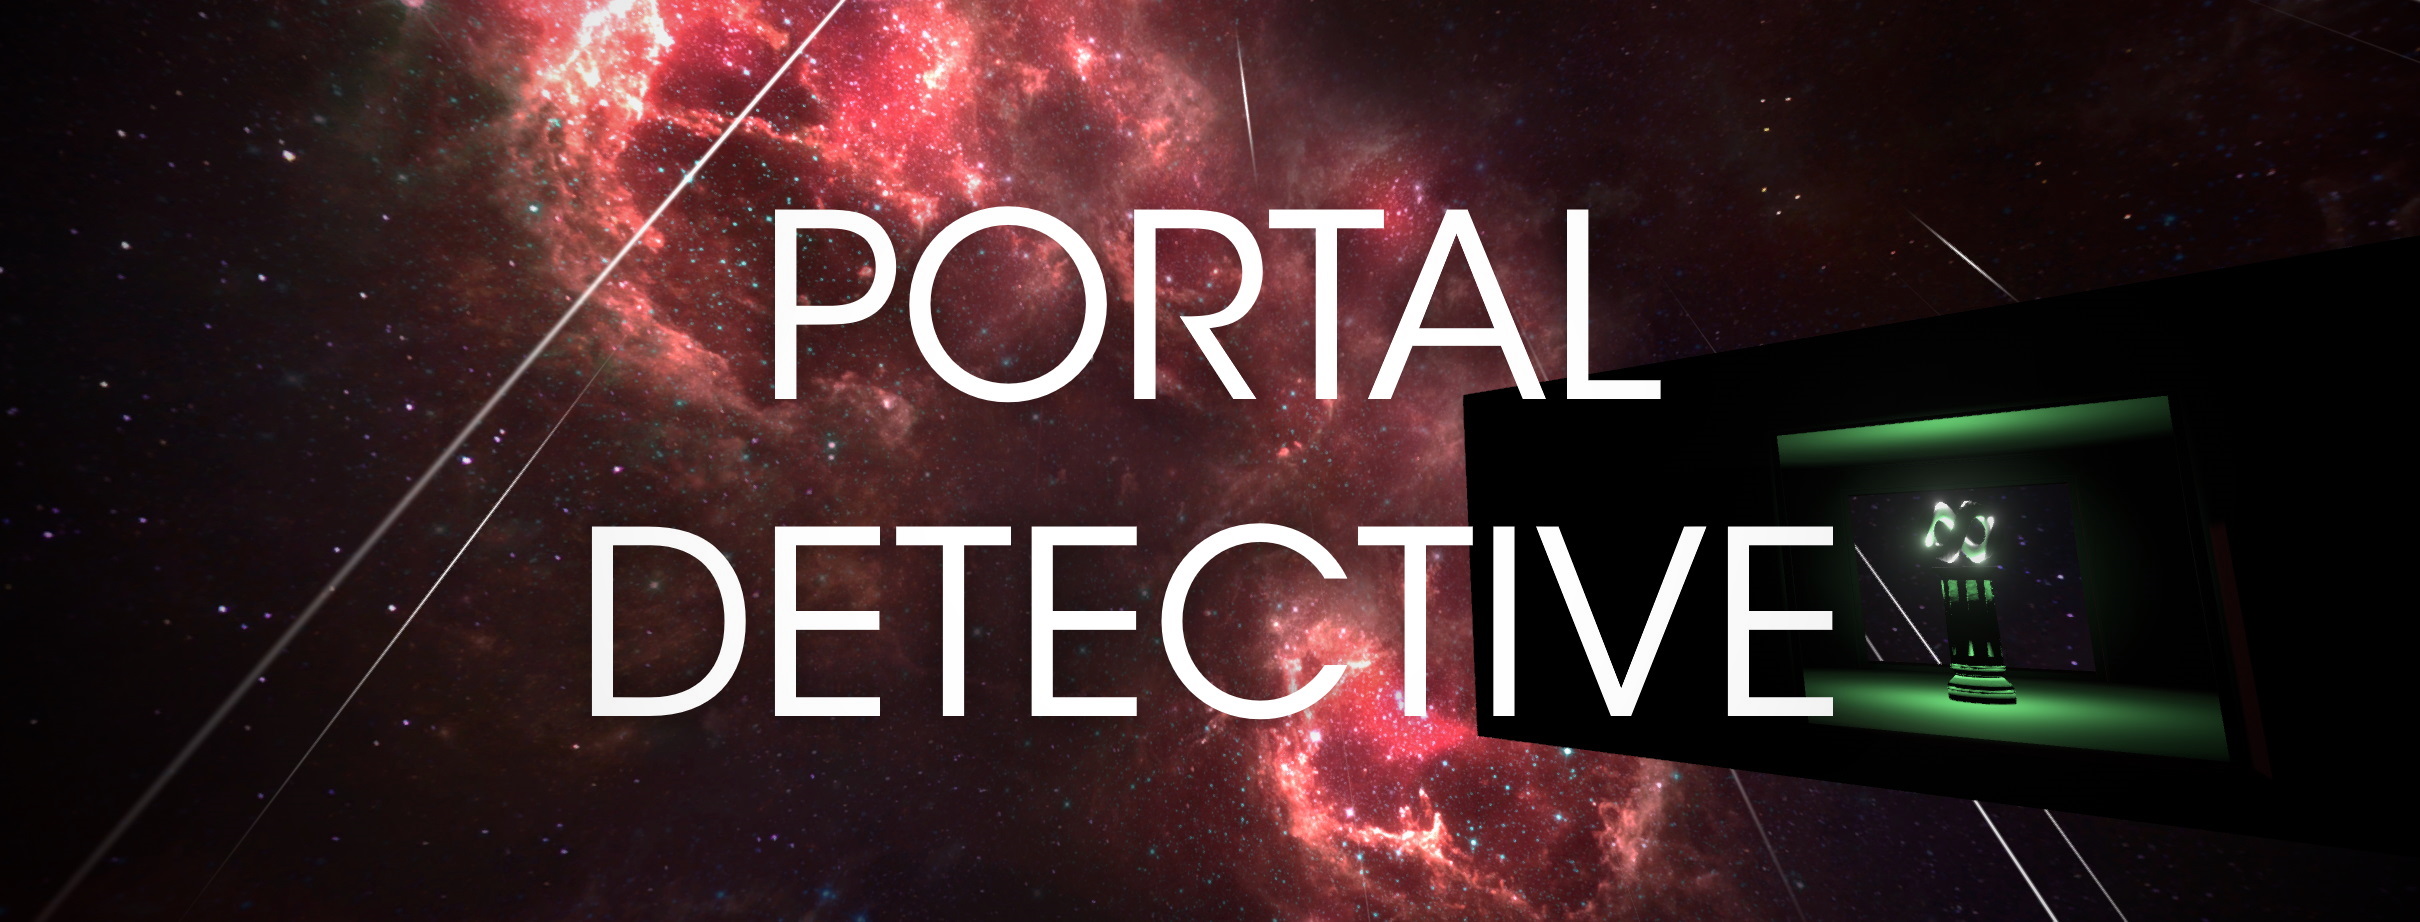 Portal Detective